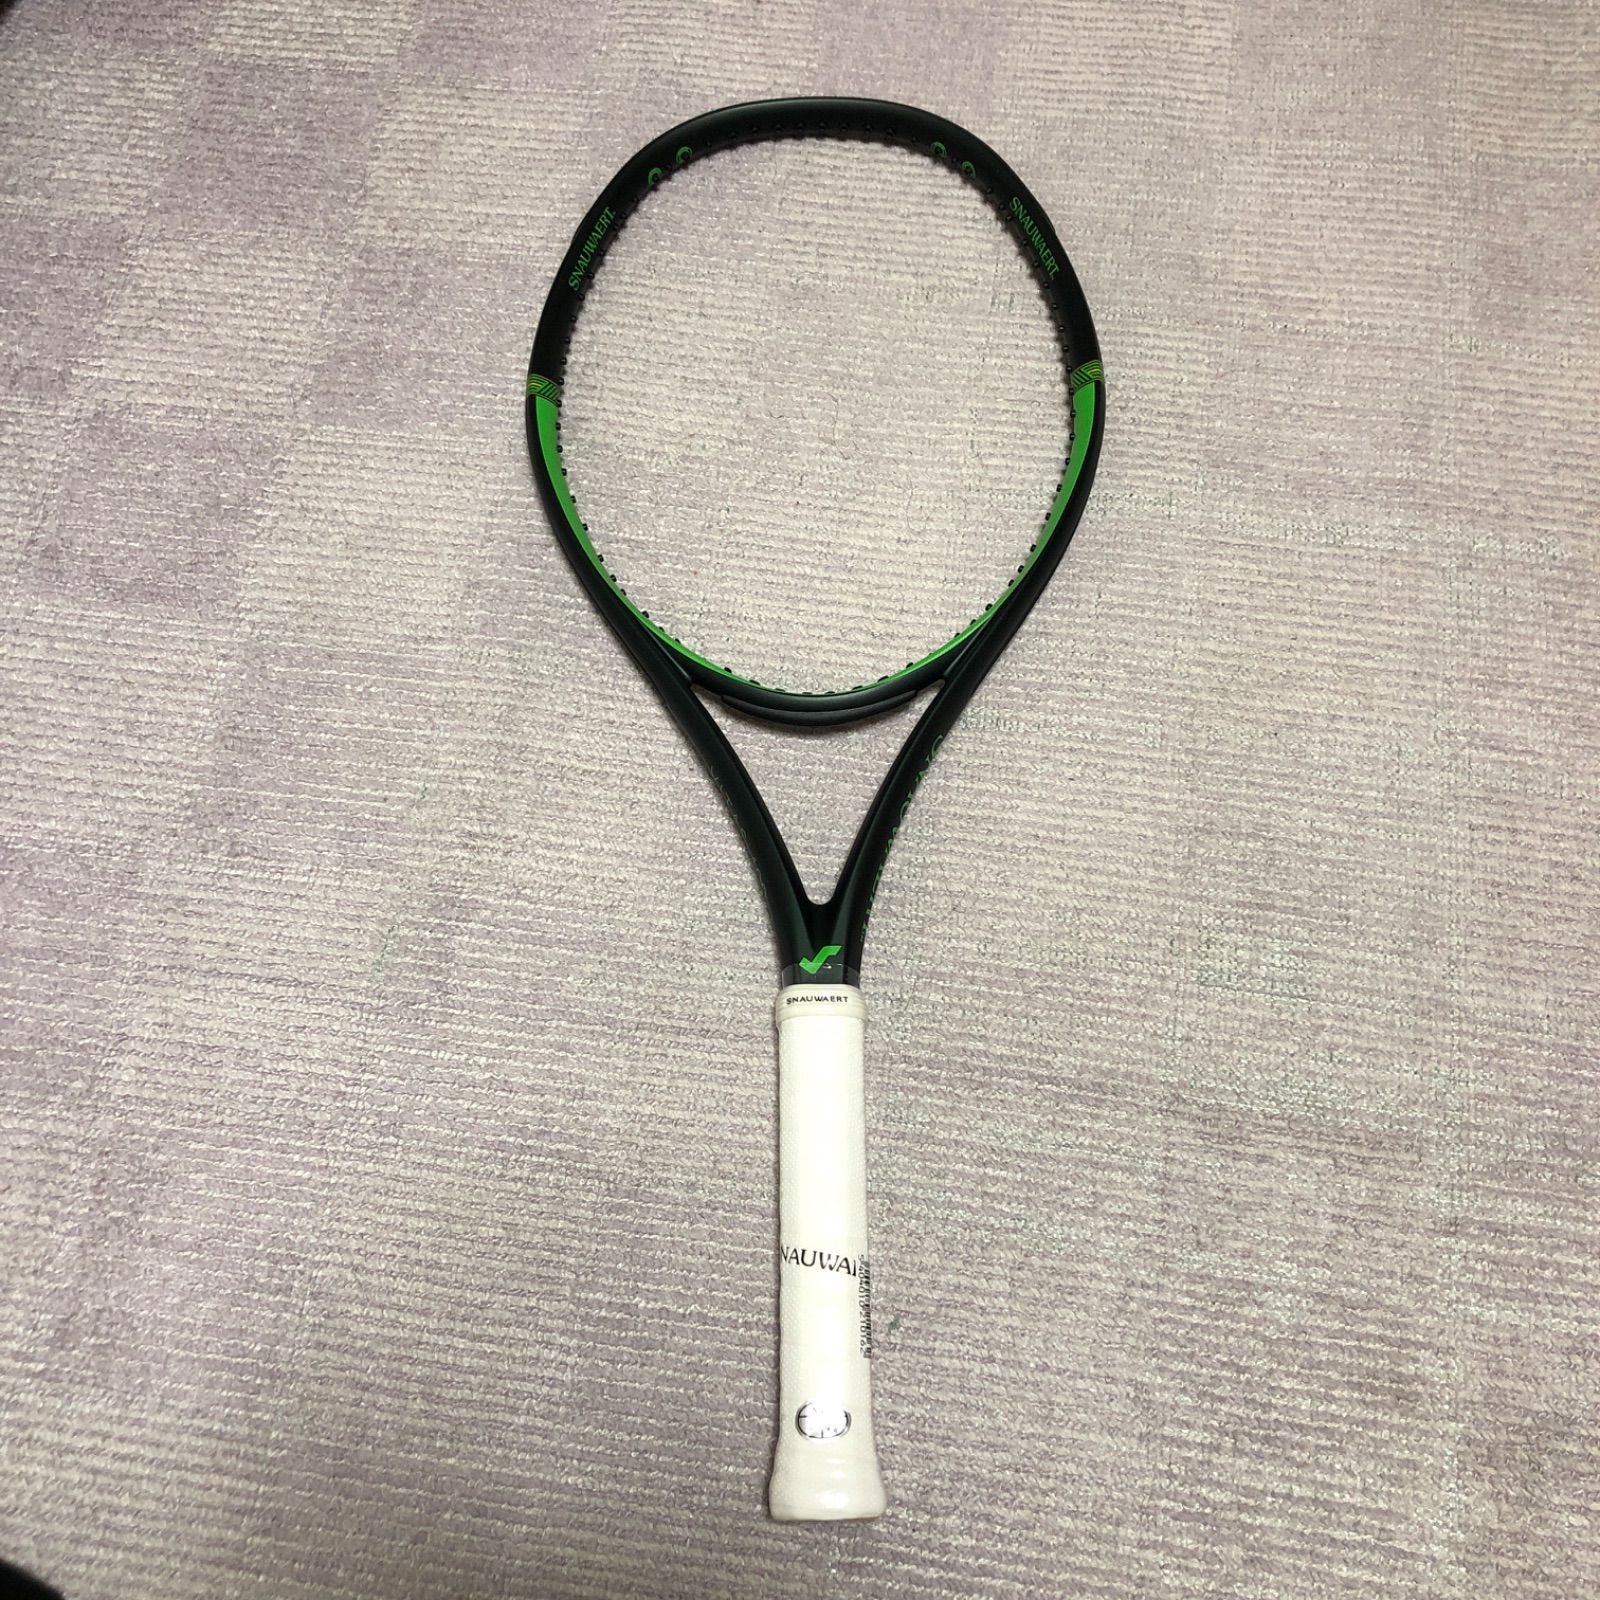 テニスラケット スノワート ビタス 100 ライト (G2)SNAUWAERT VITAS 100 LITE